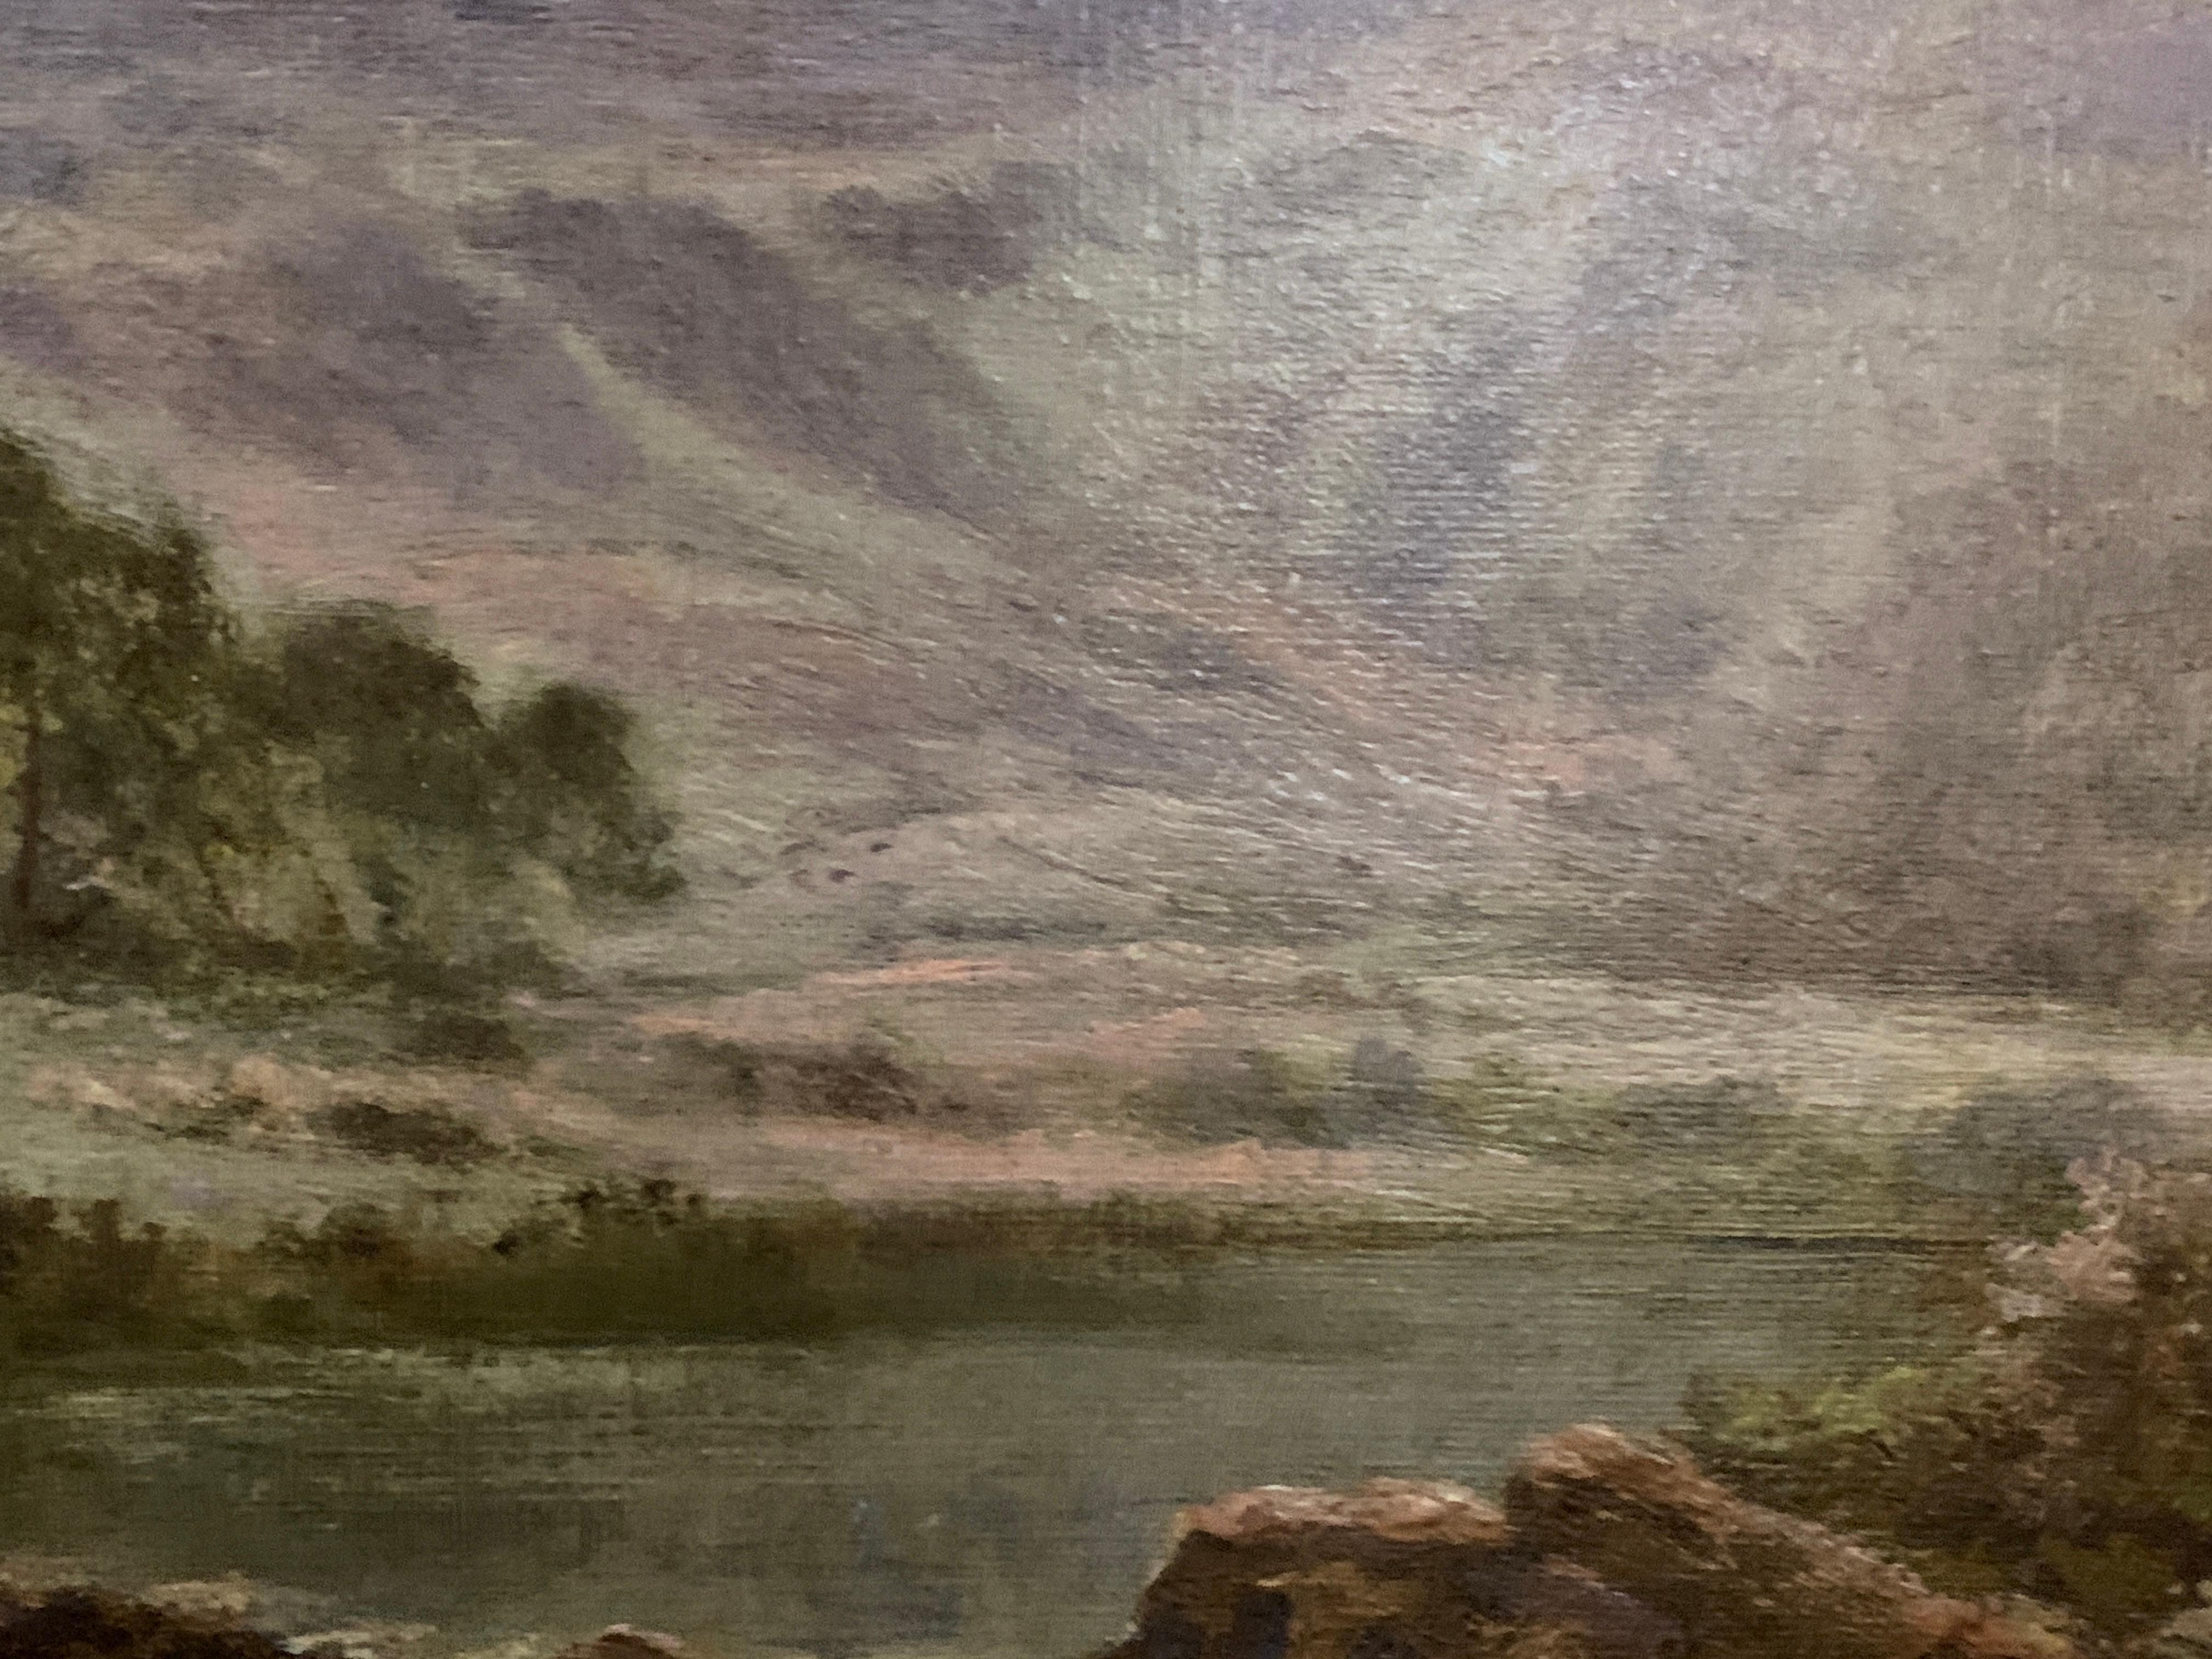 H.East était un peintre à l'huile de paysages et de scènes rurales, actif au tournant du 19e et du 20e siècle.
Il n'a pas exposé ses œuvres dans les galeries d'exposition habituelles, mais ses peintures étaient très demandées. 
Les sujets de ses